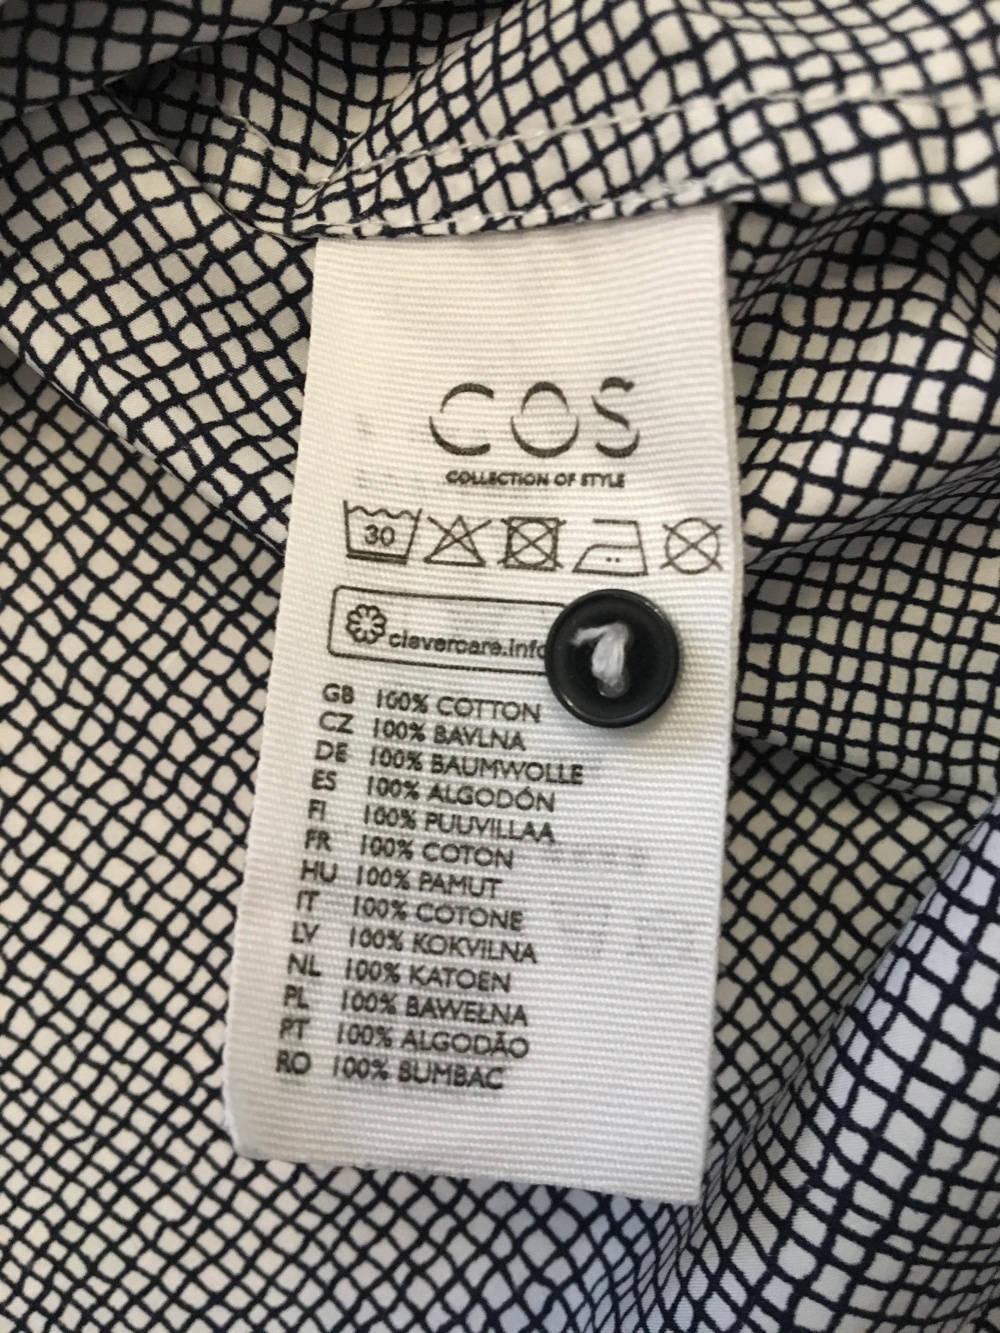 Рубашка Cos, размер S